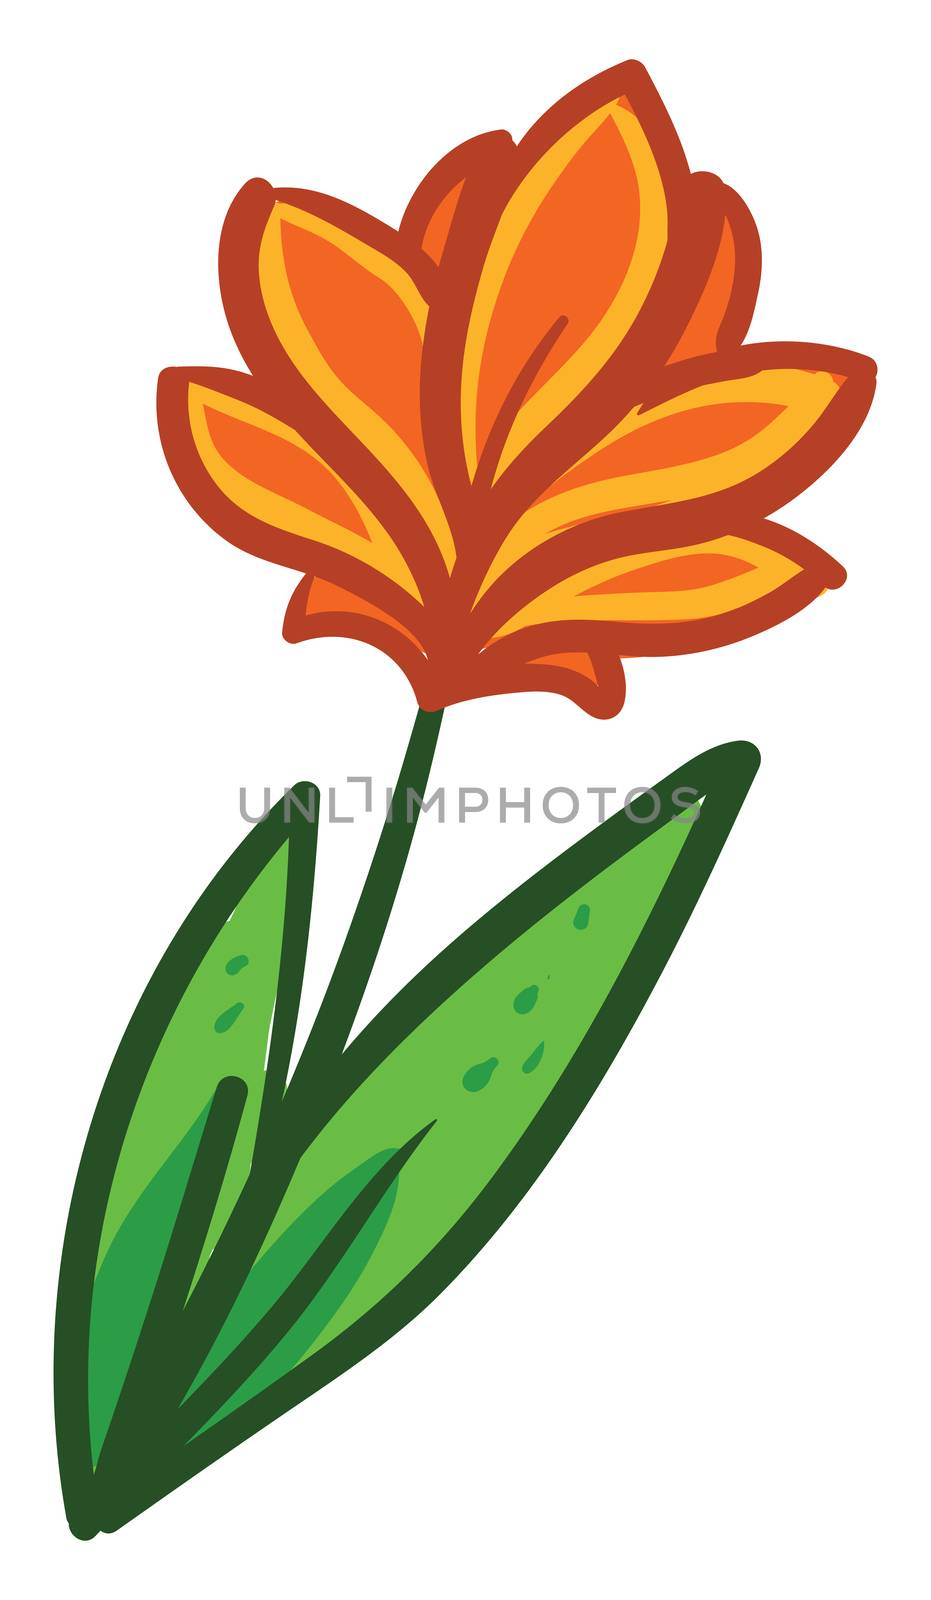 Orange flower , illustration, vector on white background